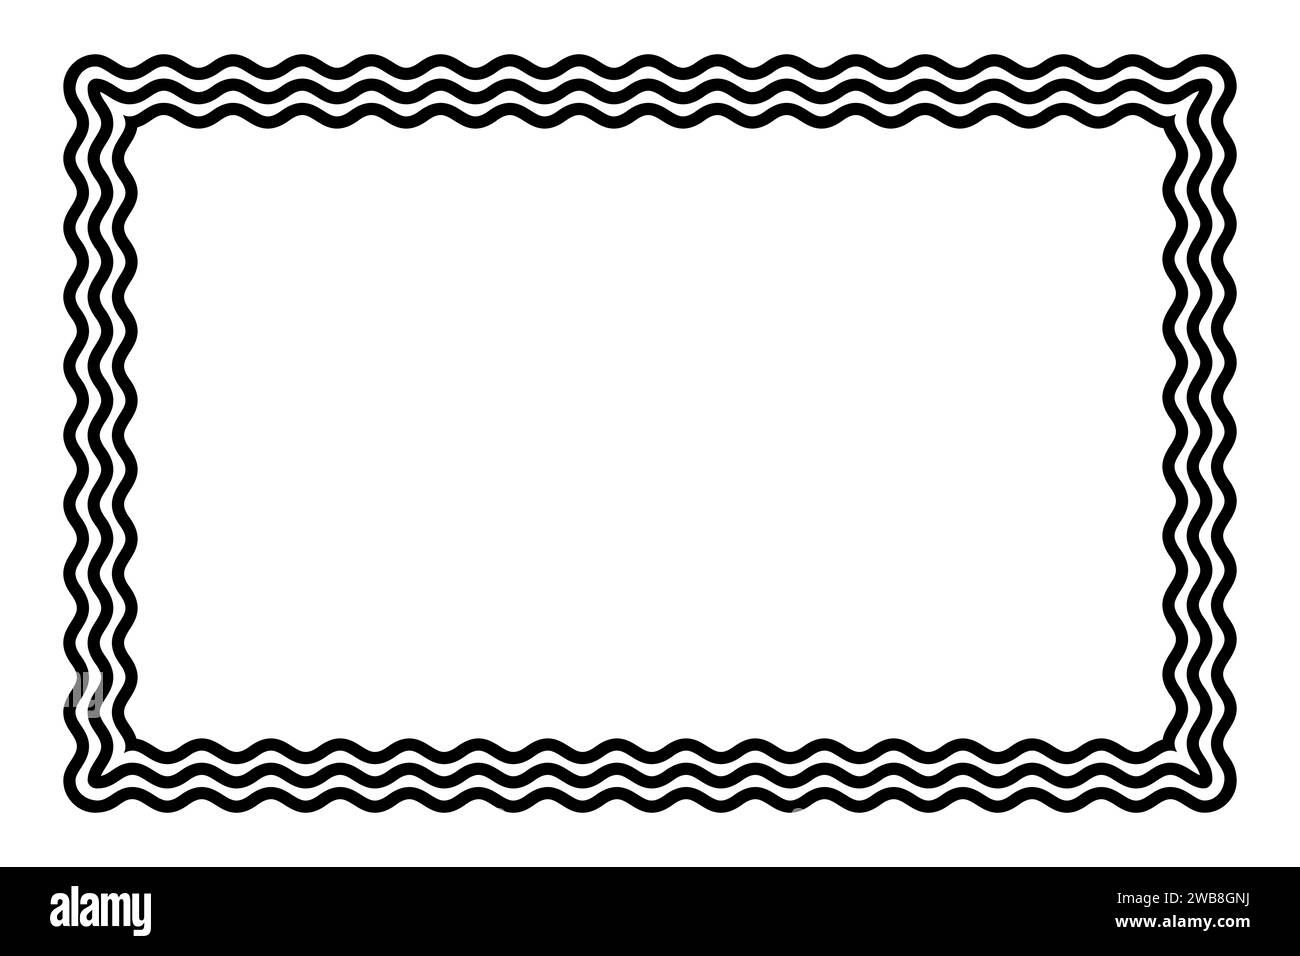 Tre linee ondulate che formano una cornice rettangolare nera. Bordo decorativo e simile a un serpente, composto da tre linee a serpentina. Foto Stock